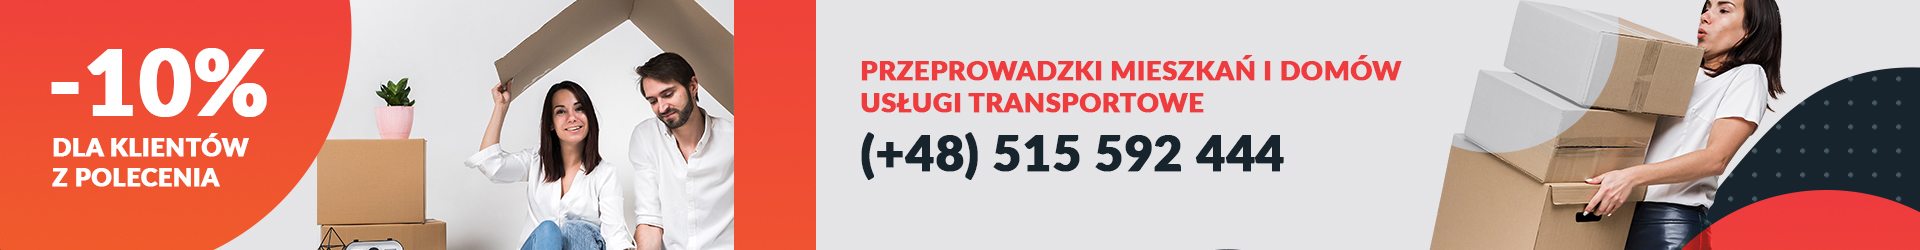 Przeprowadzki mieszkań - Warszawa